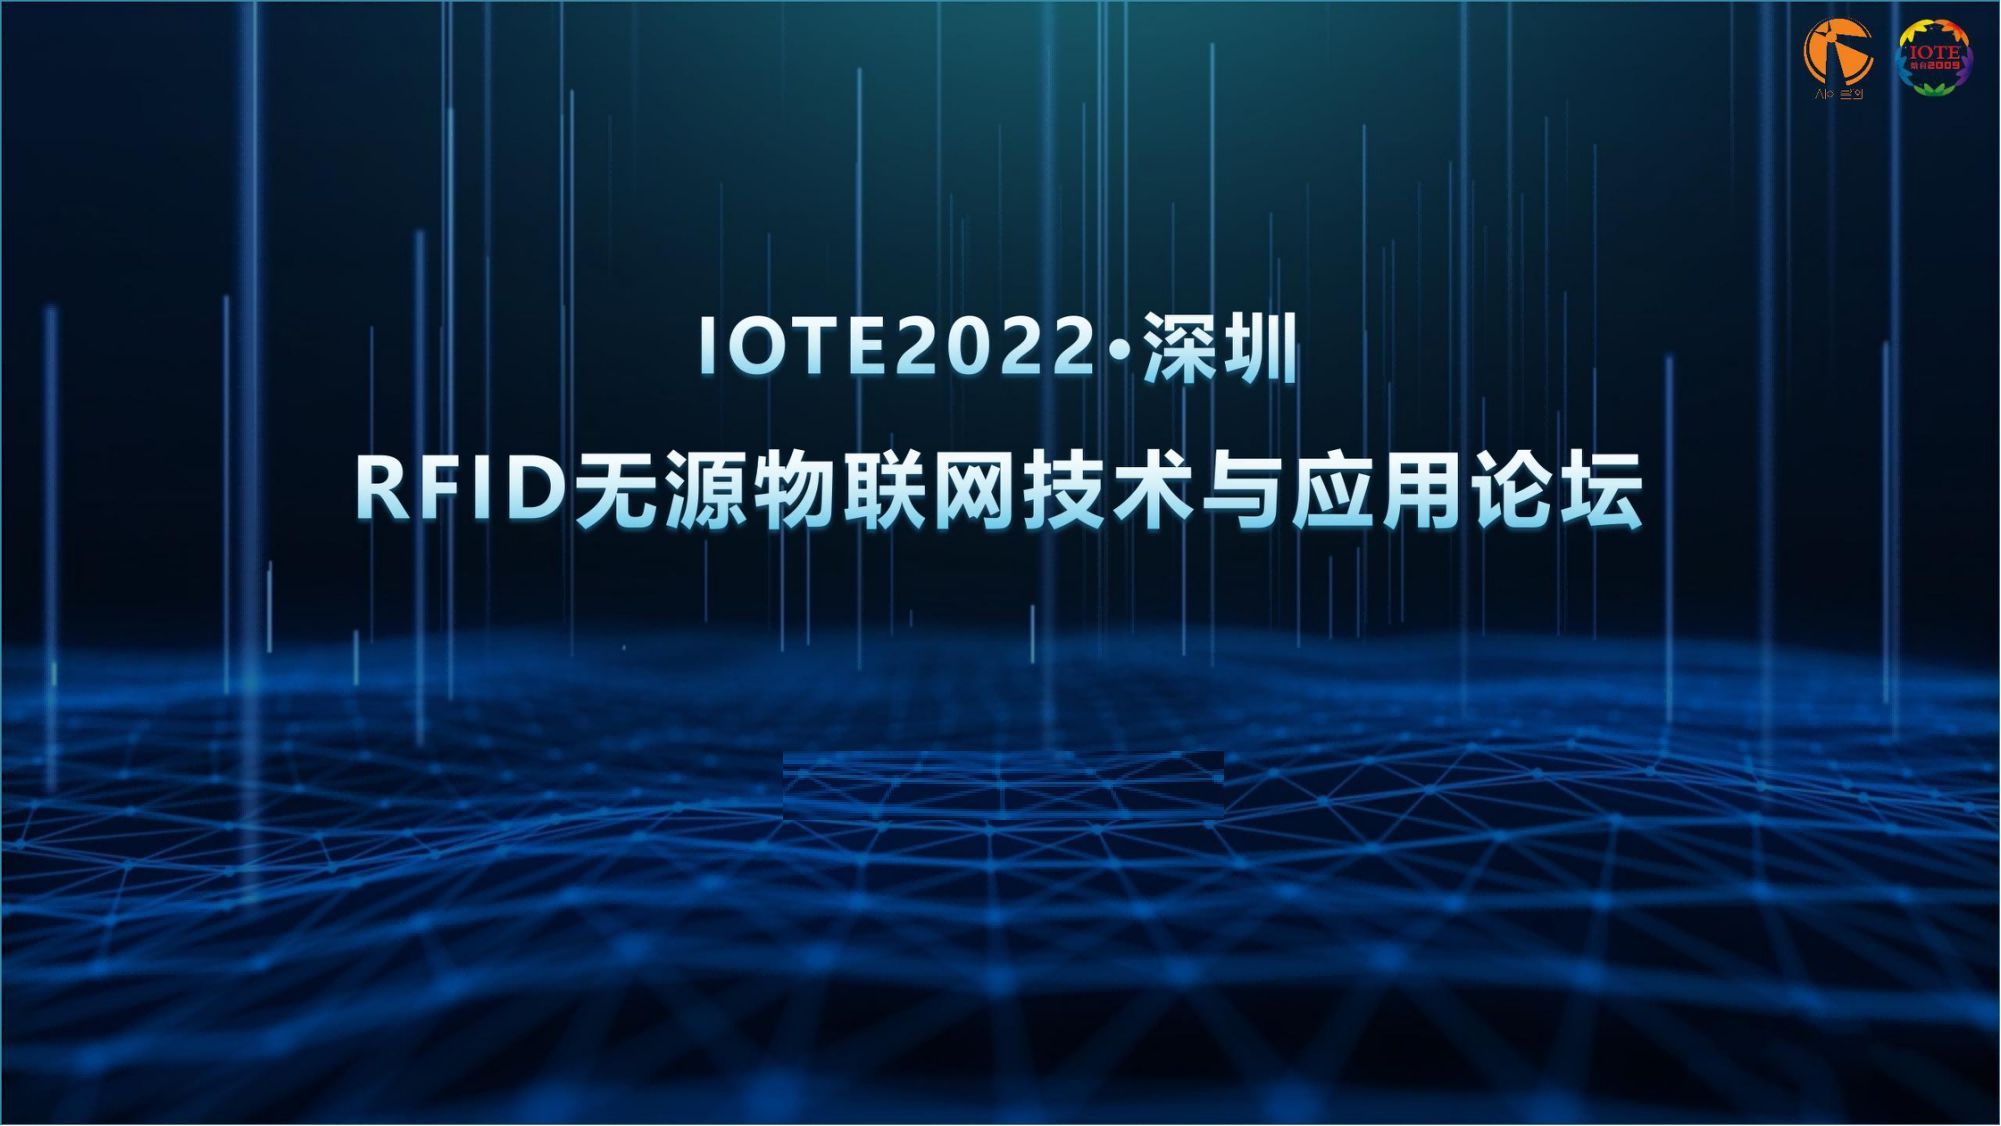 IOTE 2022深圳站RFID無源物聯網技術與應用論壇